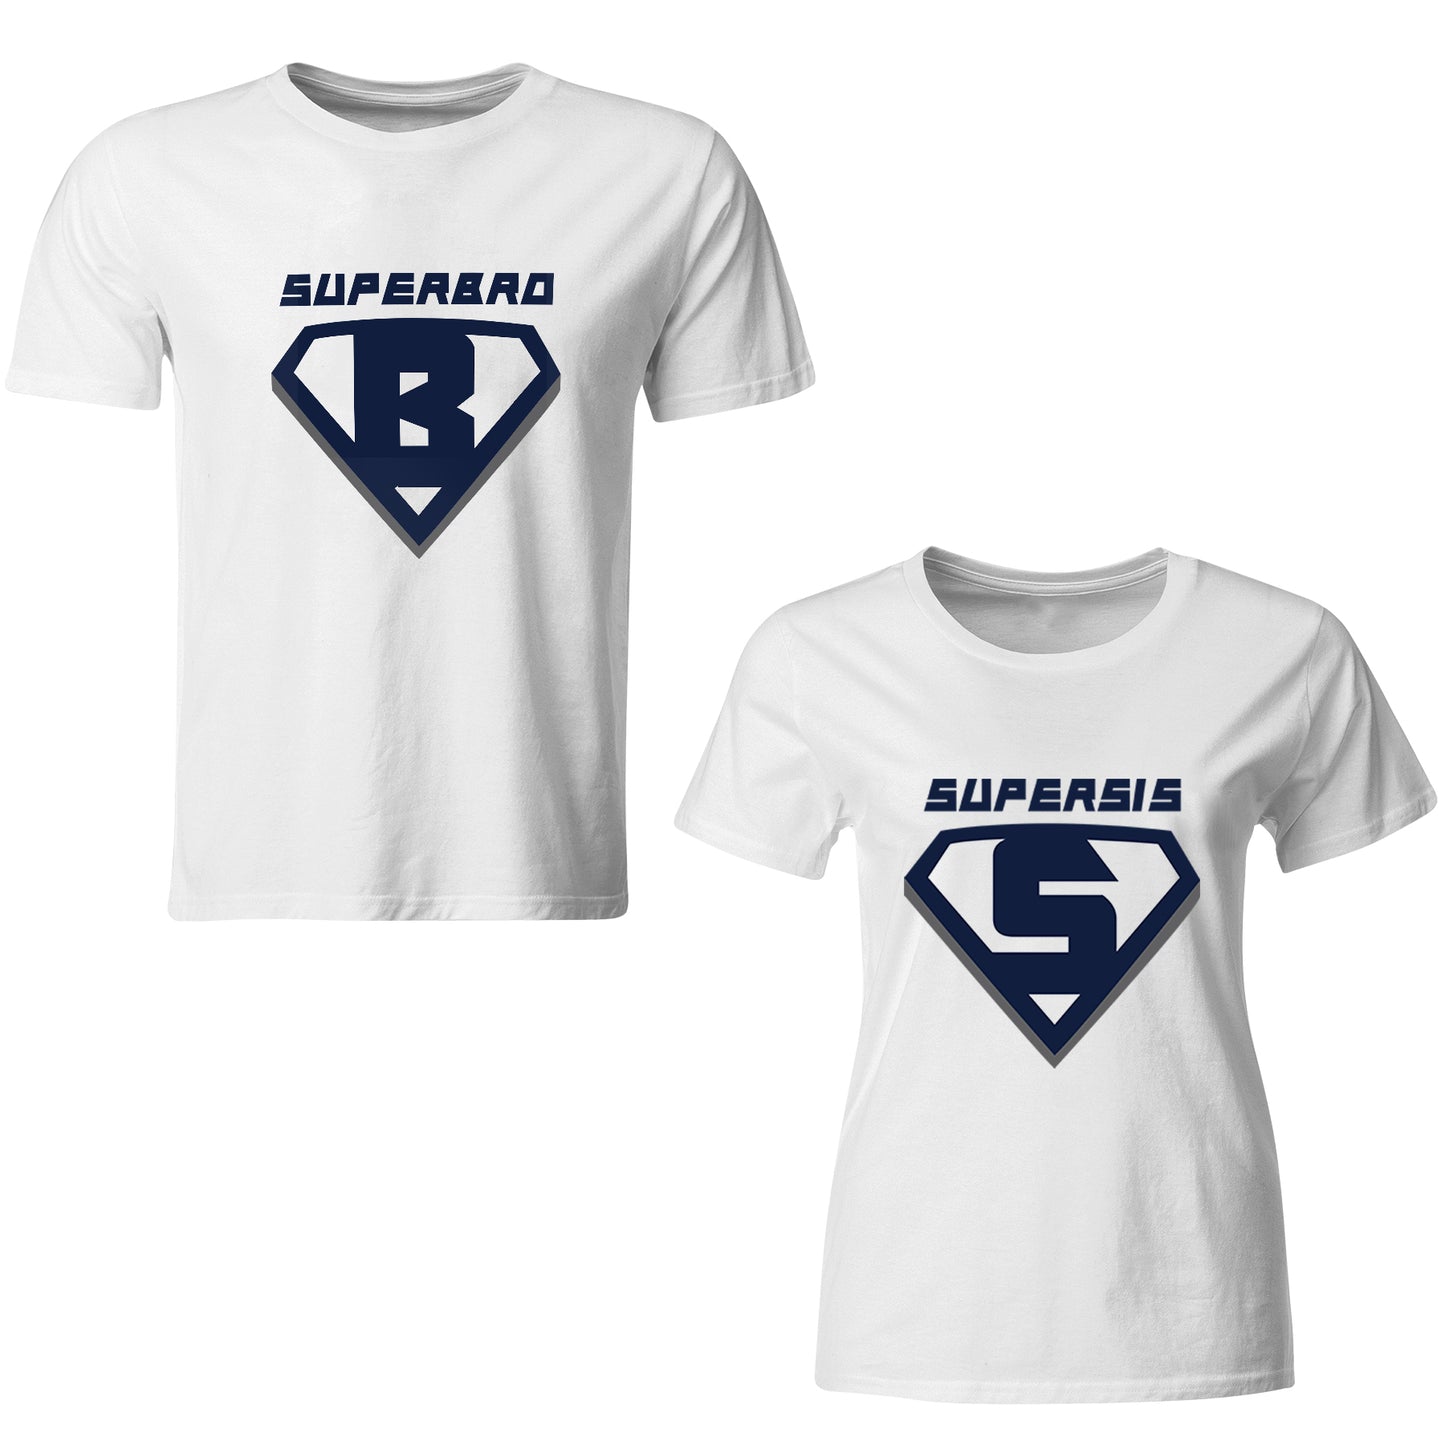 Superbro-Supersis matching Sibling t shirts - white